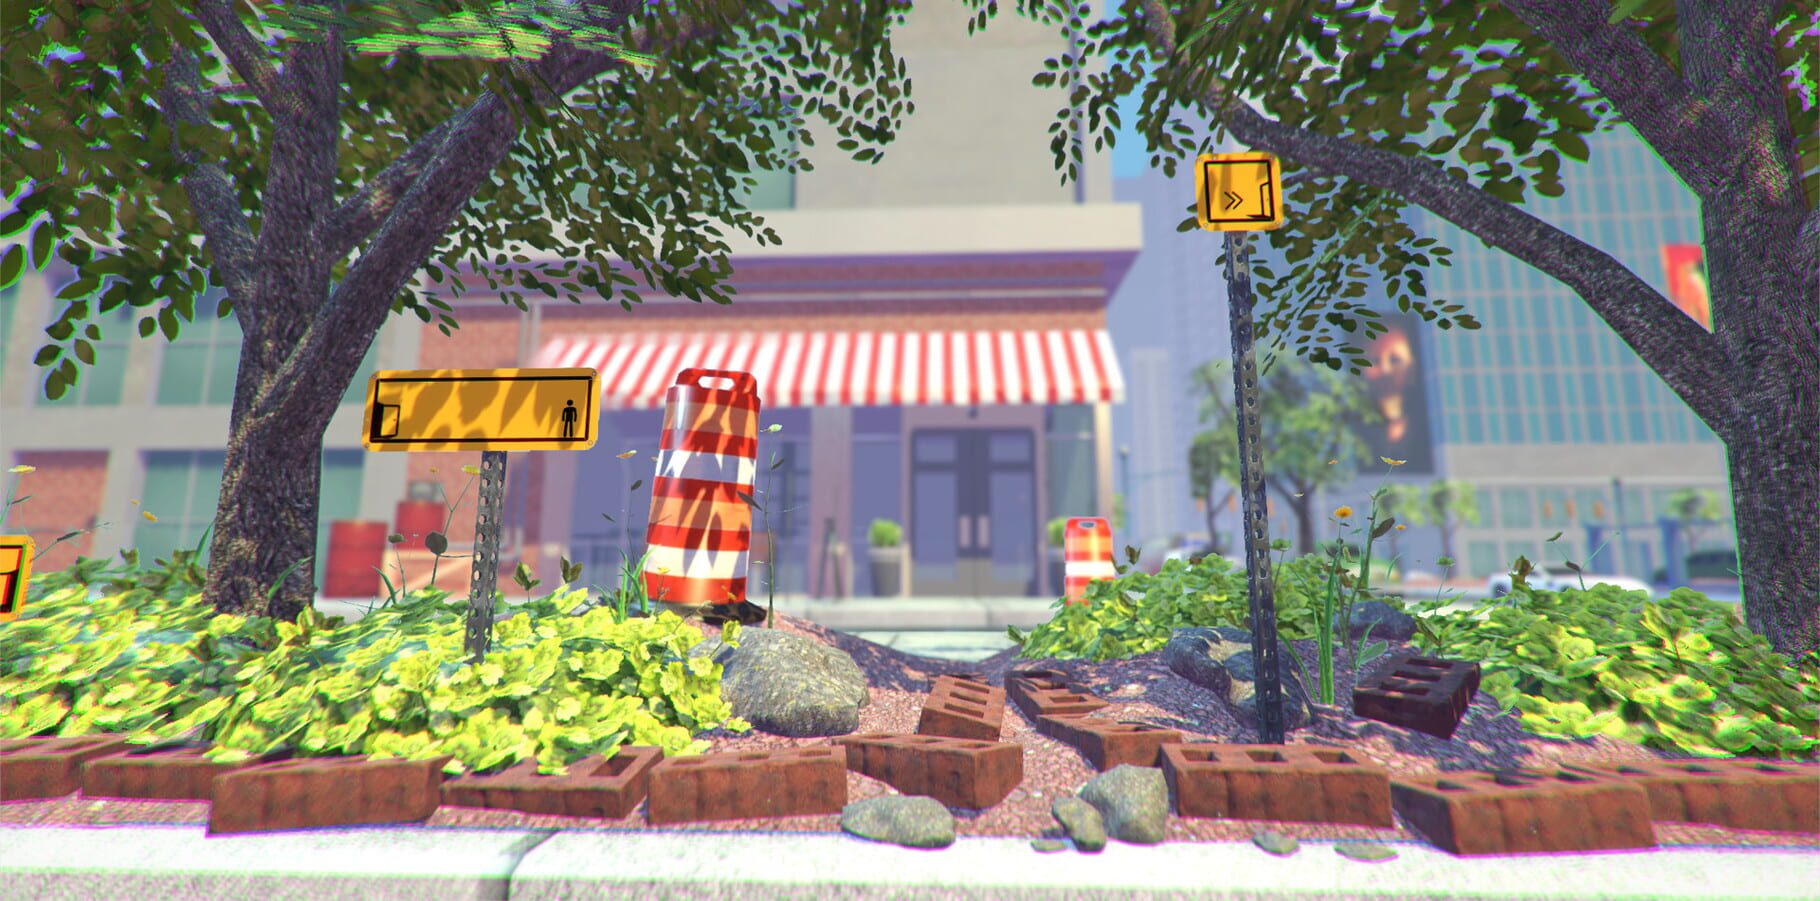 The Pedestrian screenshot